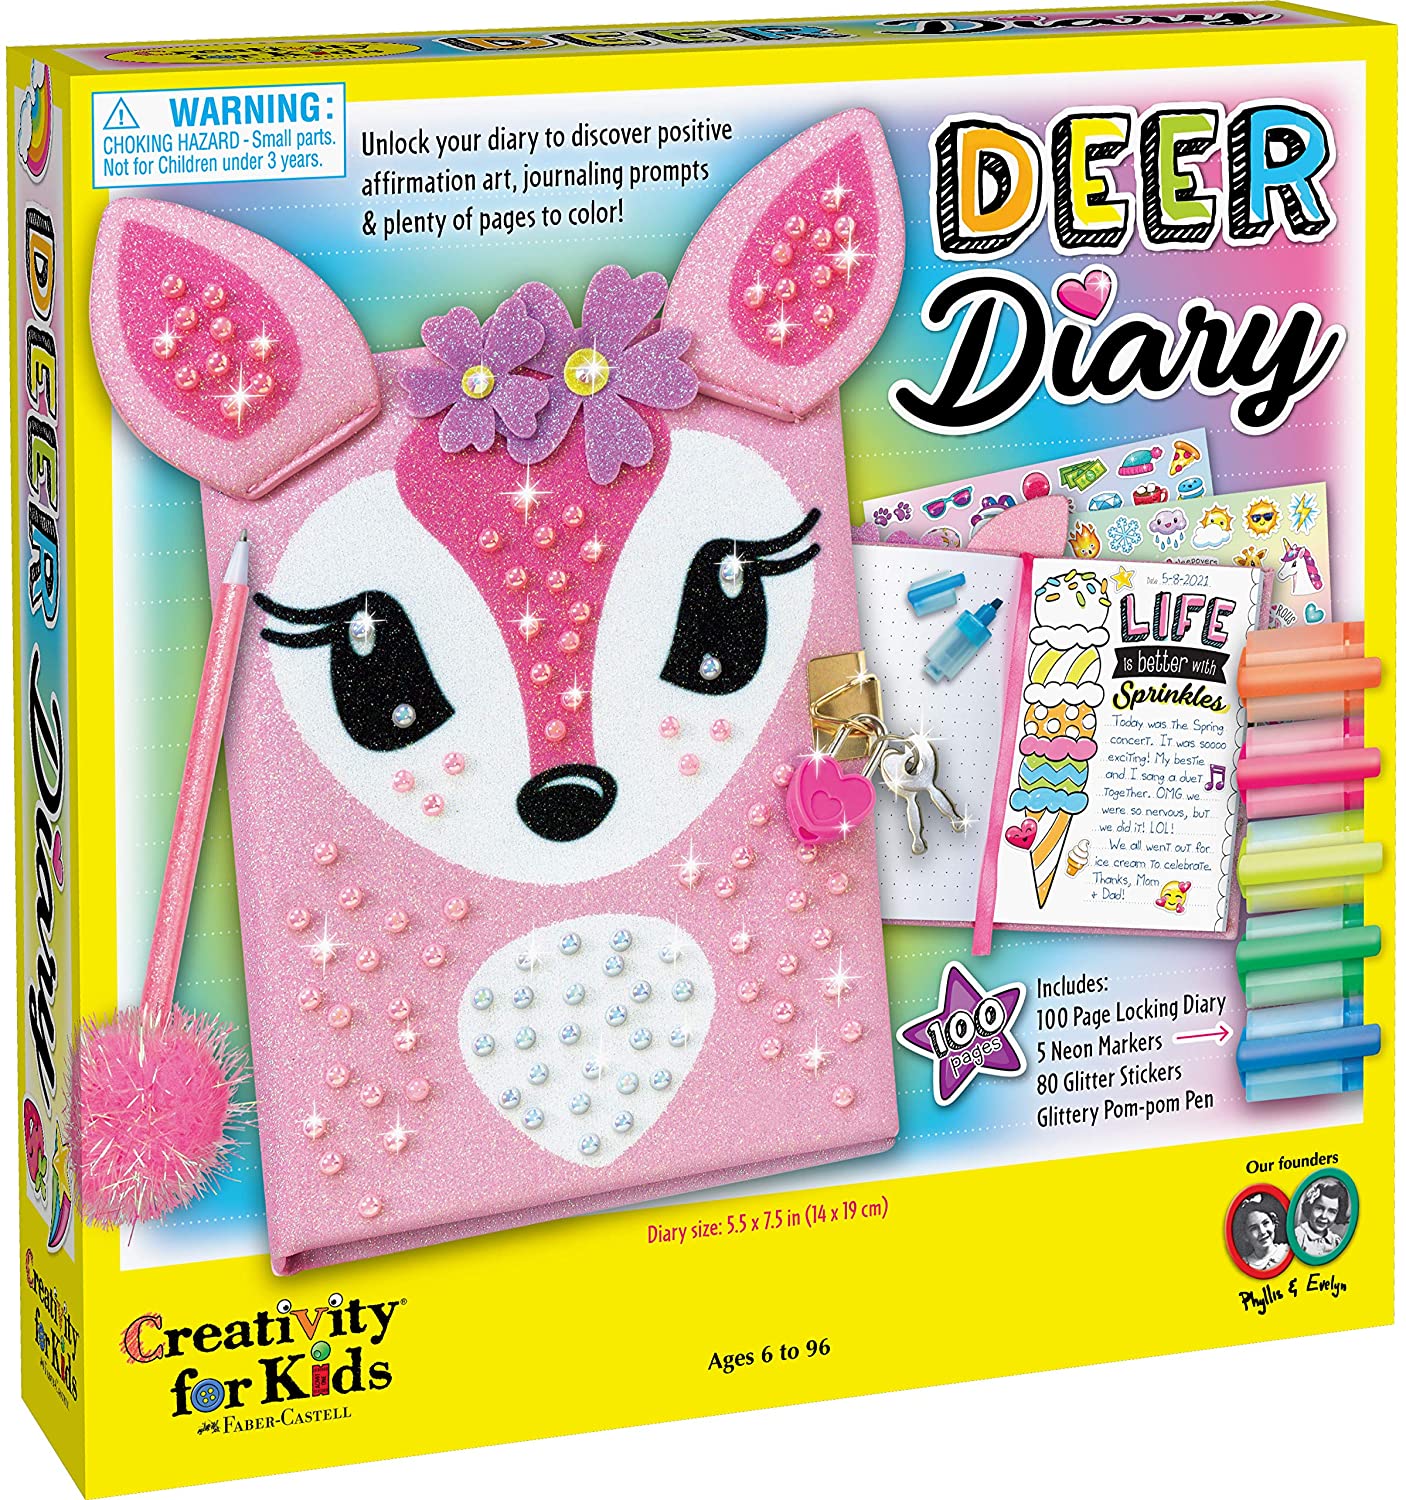 Deer Diary